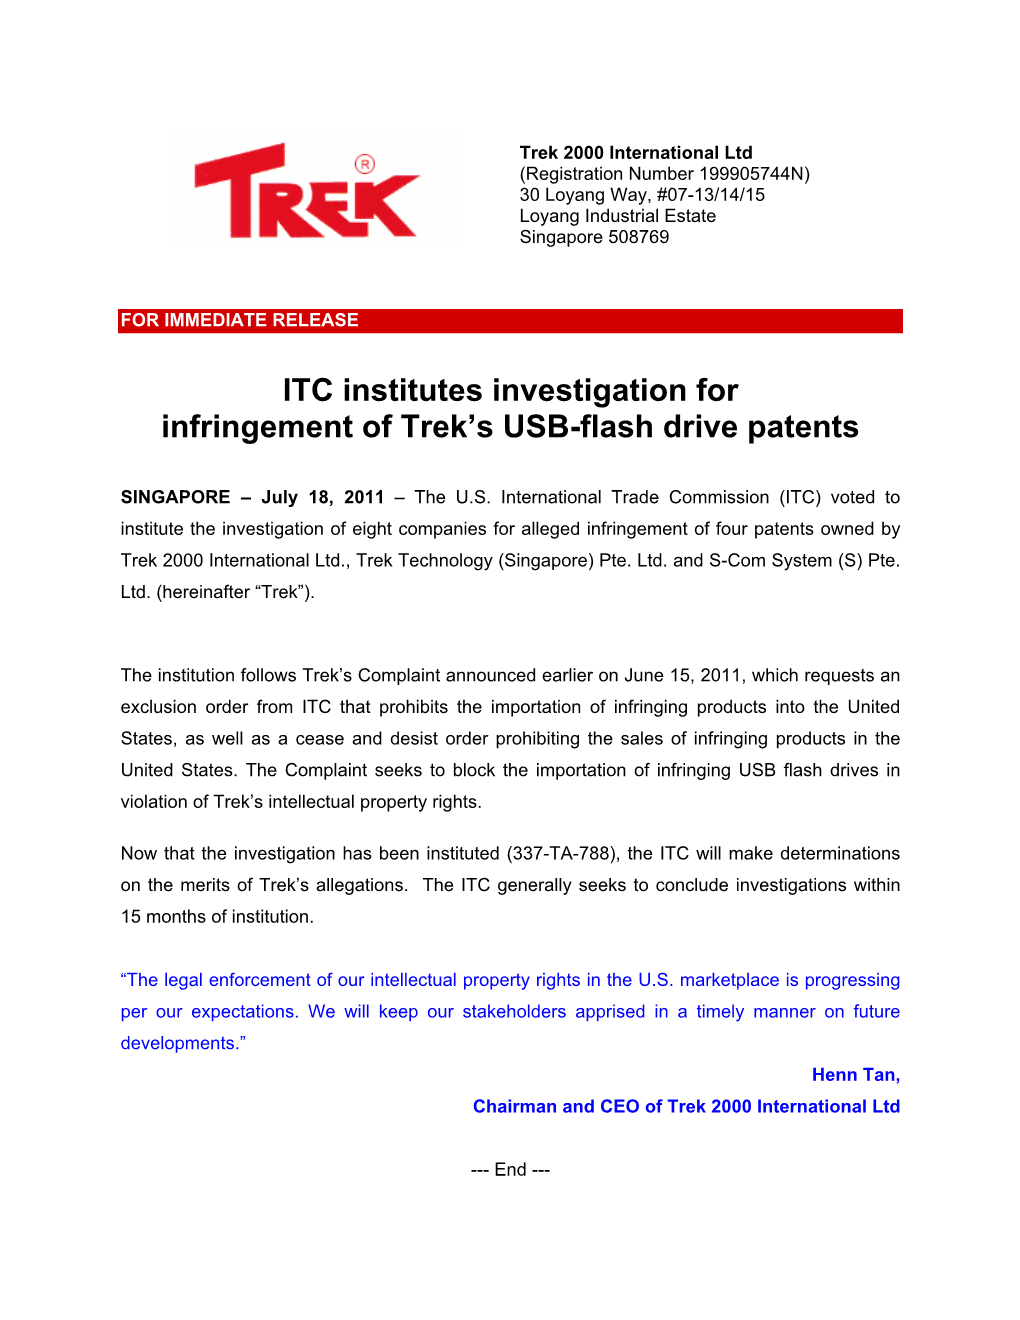 ITC Institutes Investigation for Infringement of Trek's USB-Flash